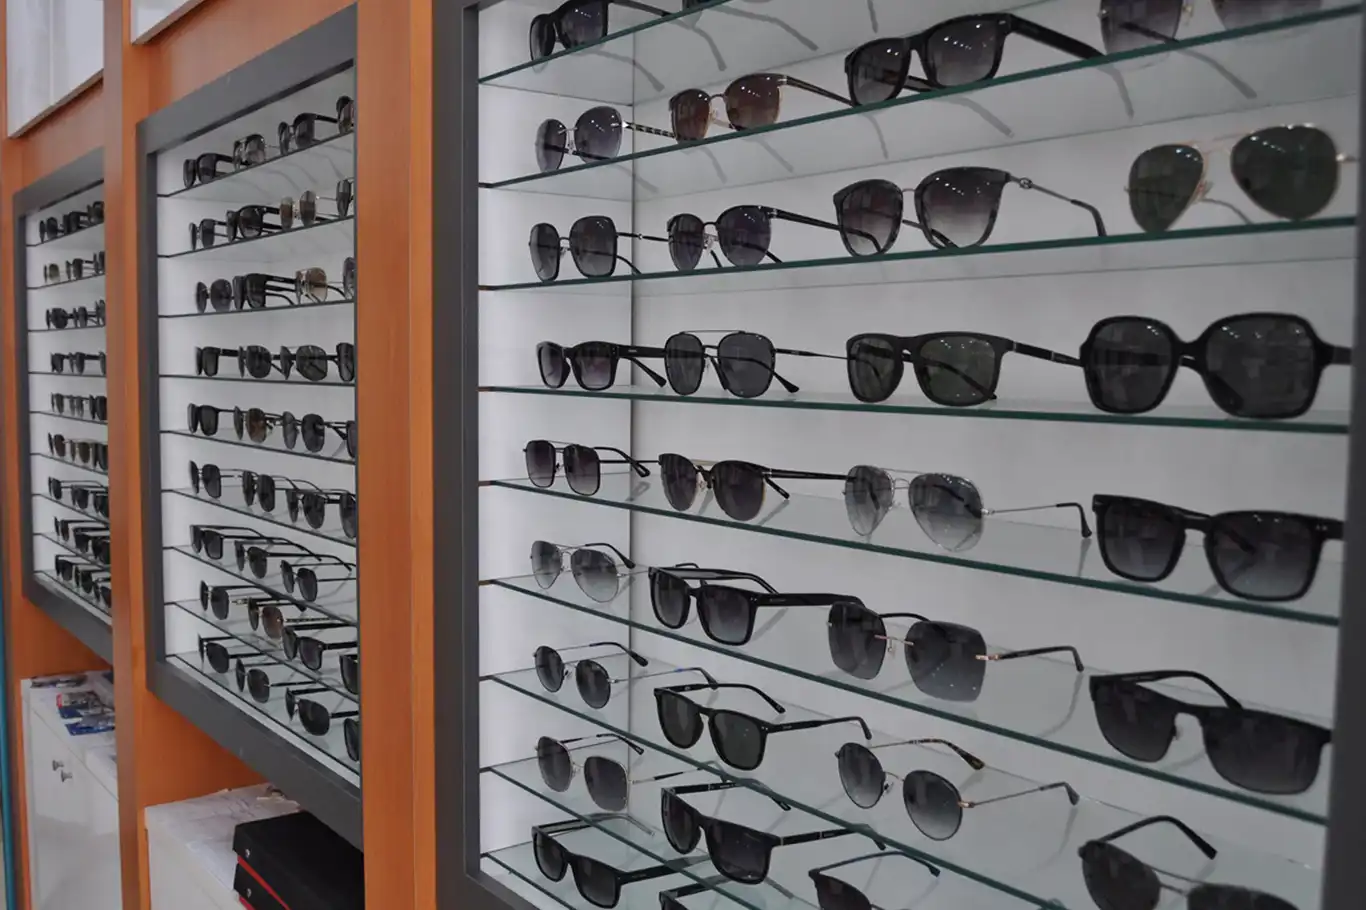 Uzmanlar: Göz sağlığı için güneş gözlüğünü optik mağazalarından alın